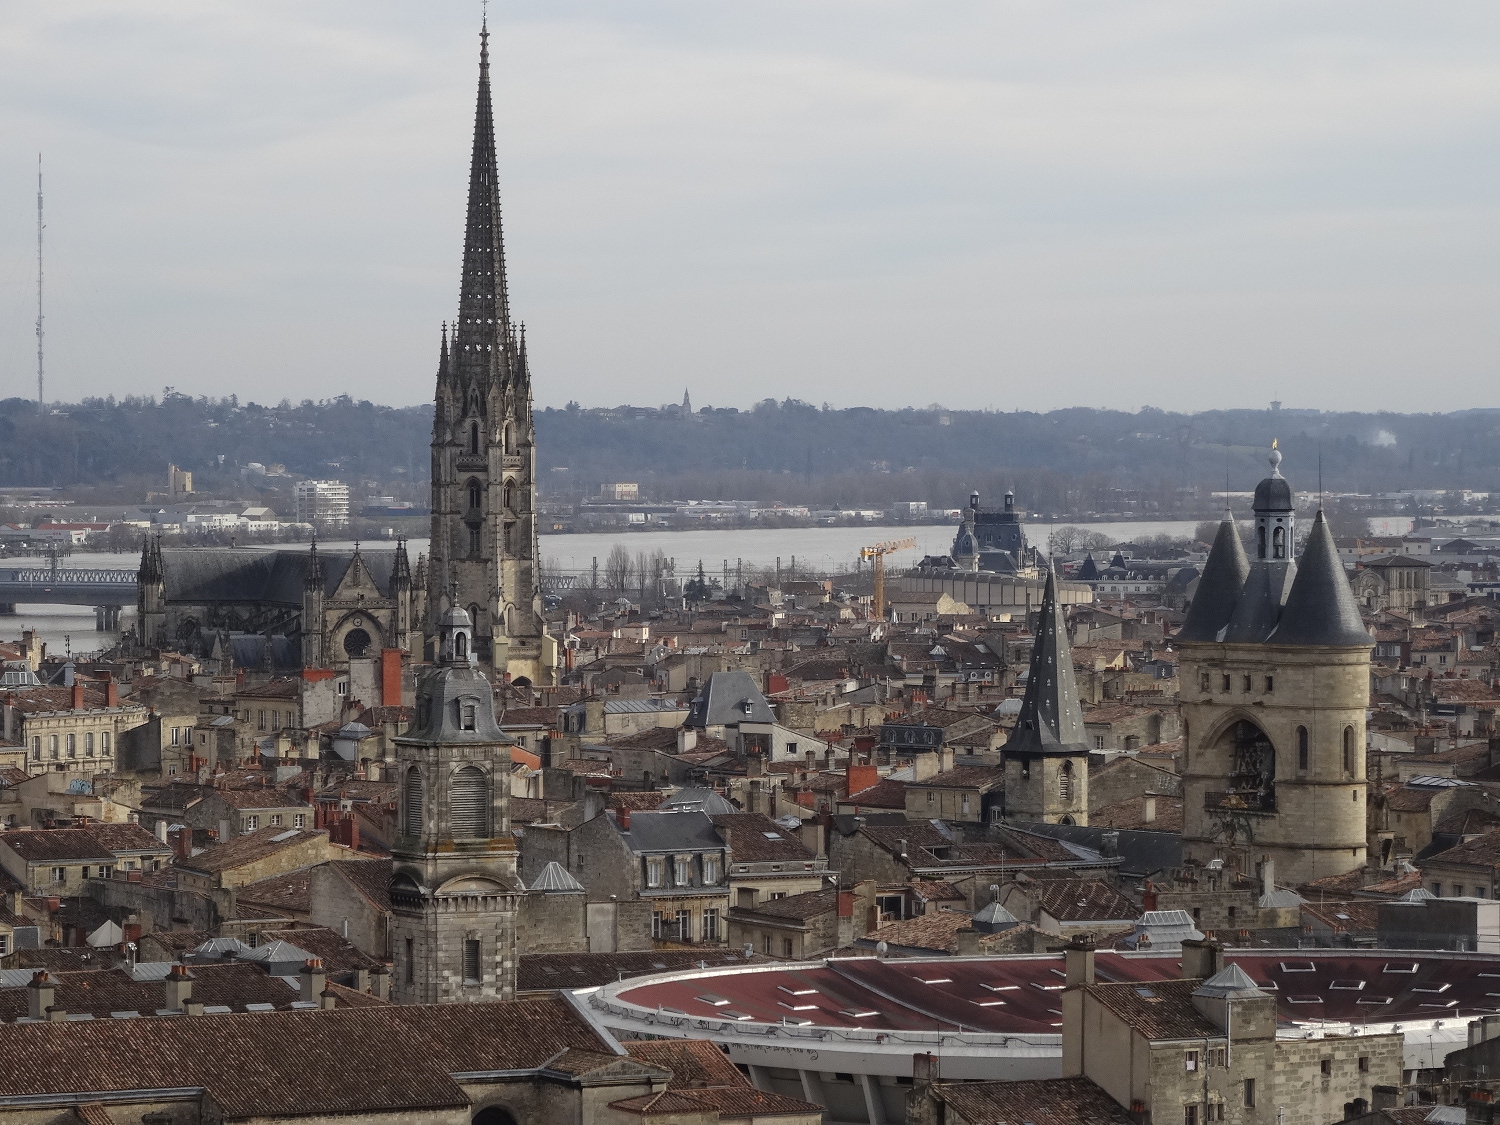 Vue d’une partie du secteur sauvegardé de Bordeaux depuis les toits. Garonne et flèche Saint-Michel en arrière plan. Toit du Palais des Sports au premier plan. Grosse cloche, monuments historiques et immeubles d’habitation. 